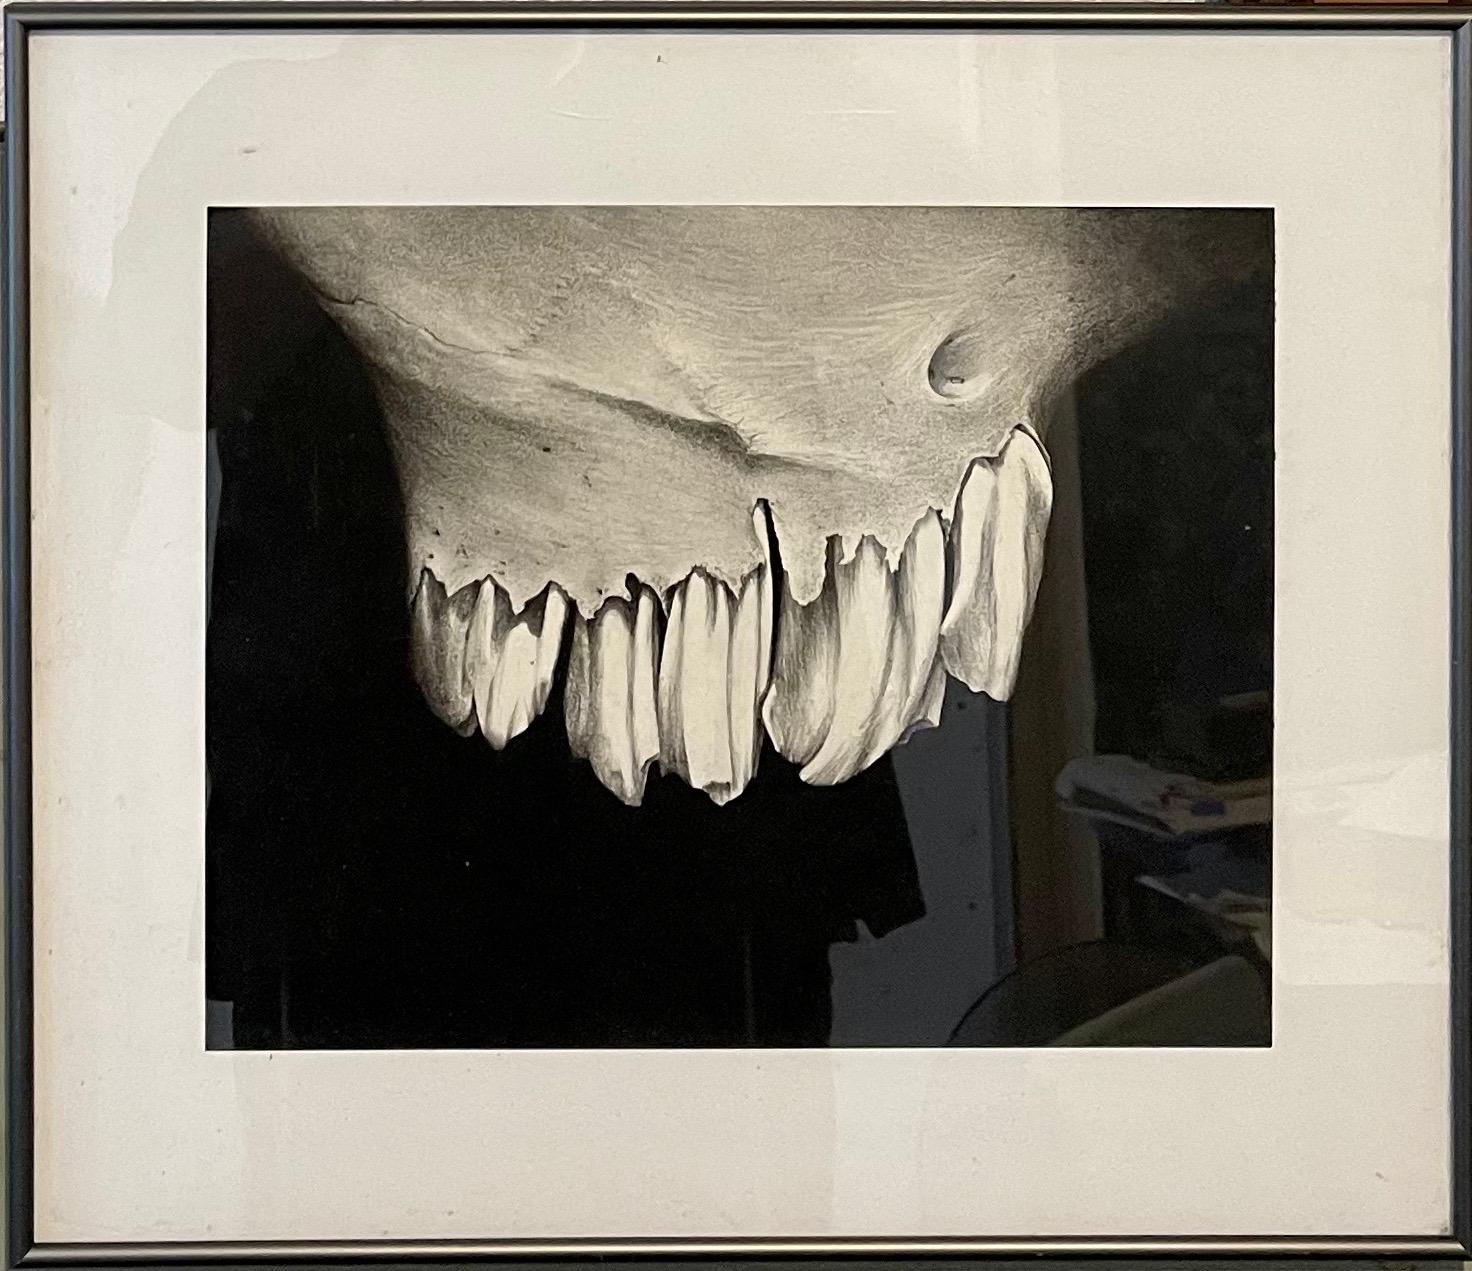 Erica Child Prud’homme Figurative Art – Zeichenkohle Zeichnung Abstrakte Teeth Bone Erica Child Prudhomme Amerikanische Frau Künstlerin